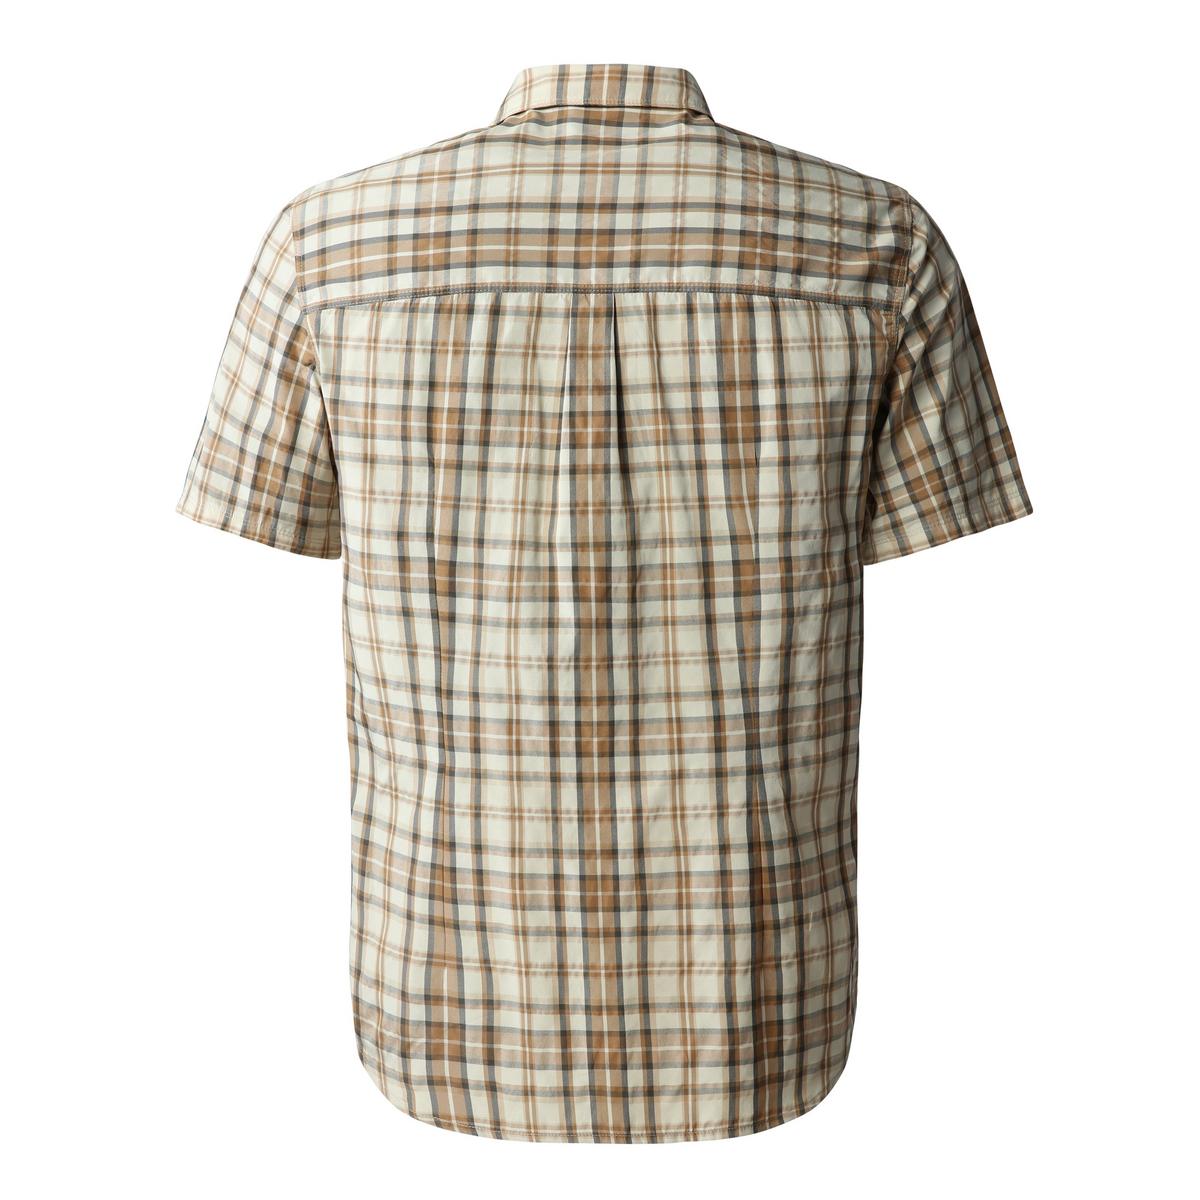 The North Face Men's Pine Knot Shirt - Khaki/Stone/Plaid